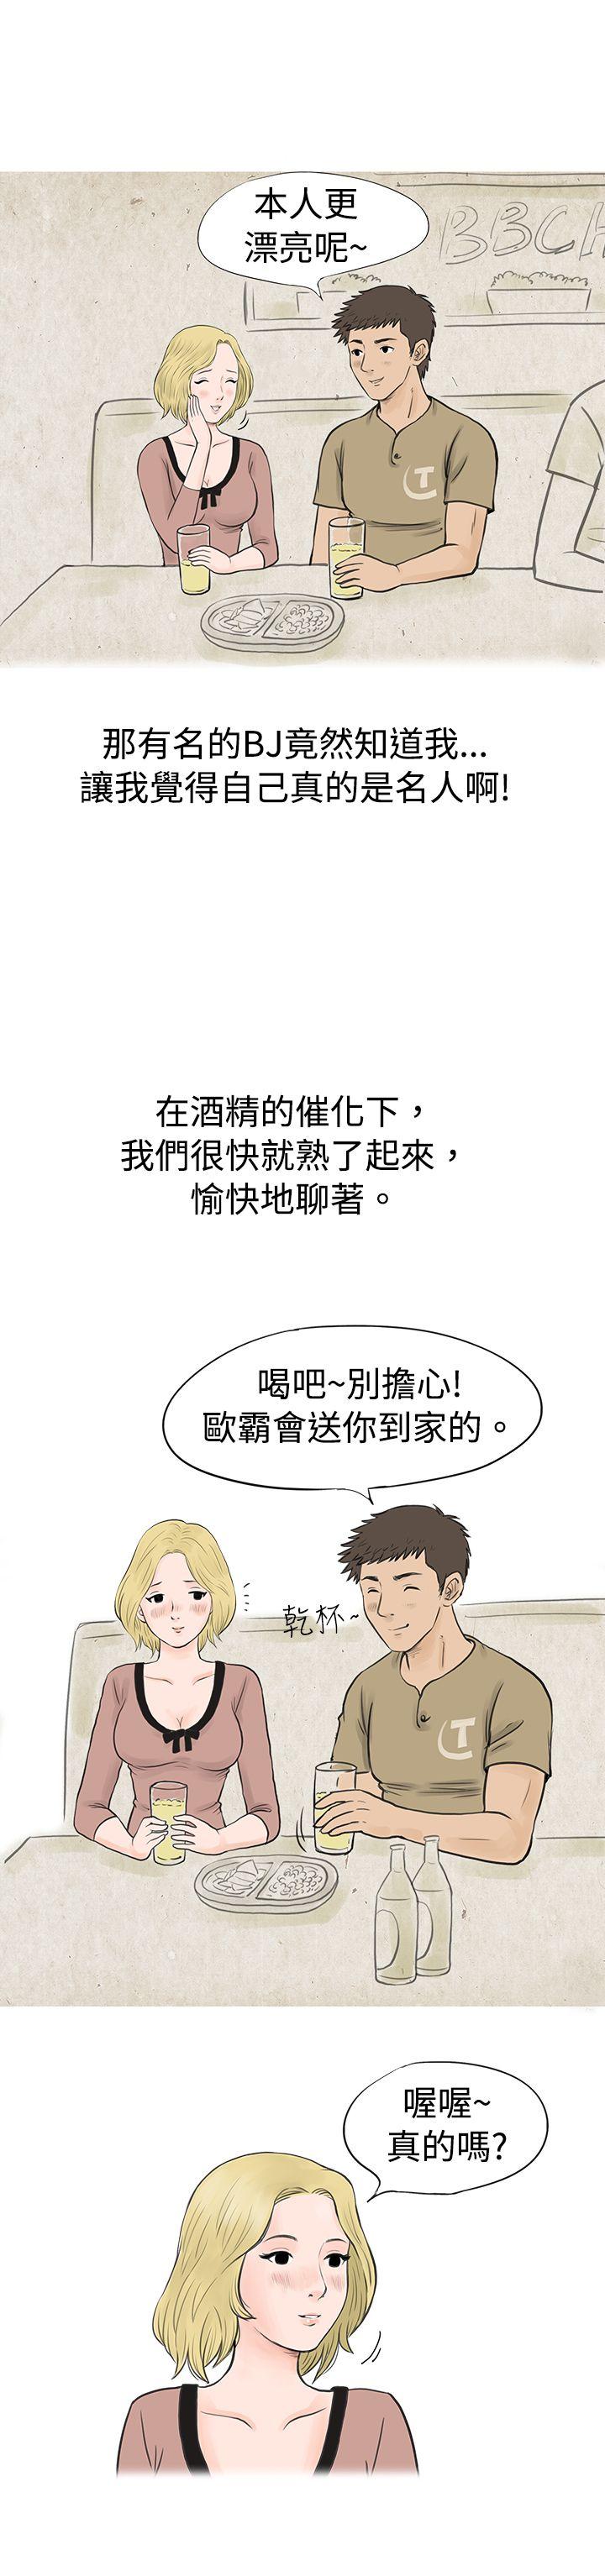 秘密Story  个人秀BJ小故事(下) 漫画图片3.jpg